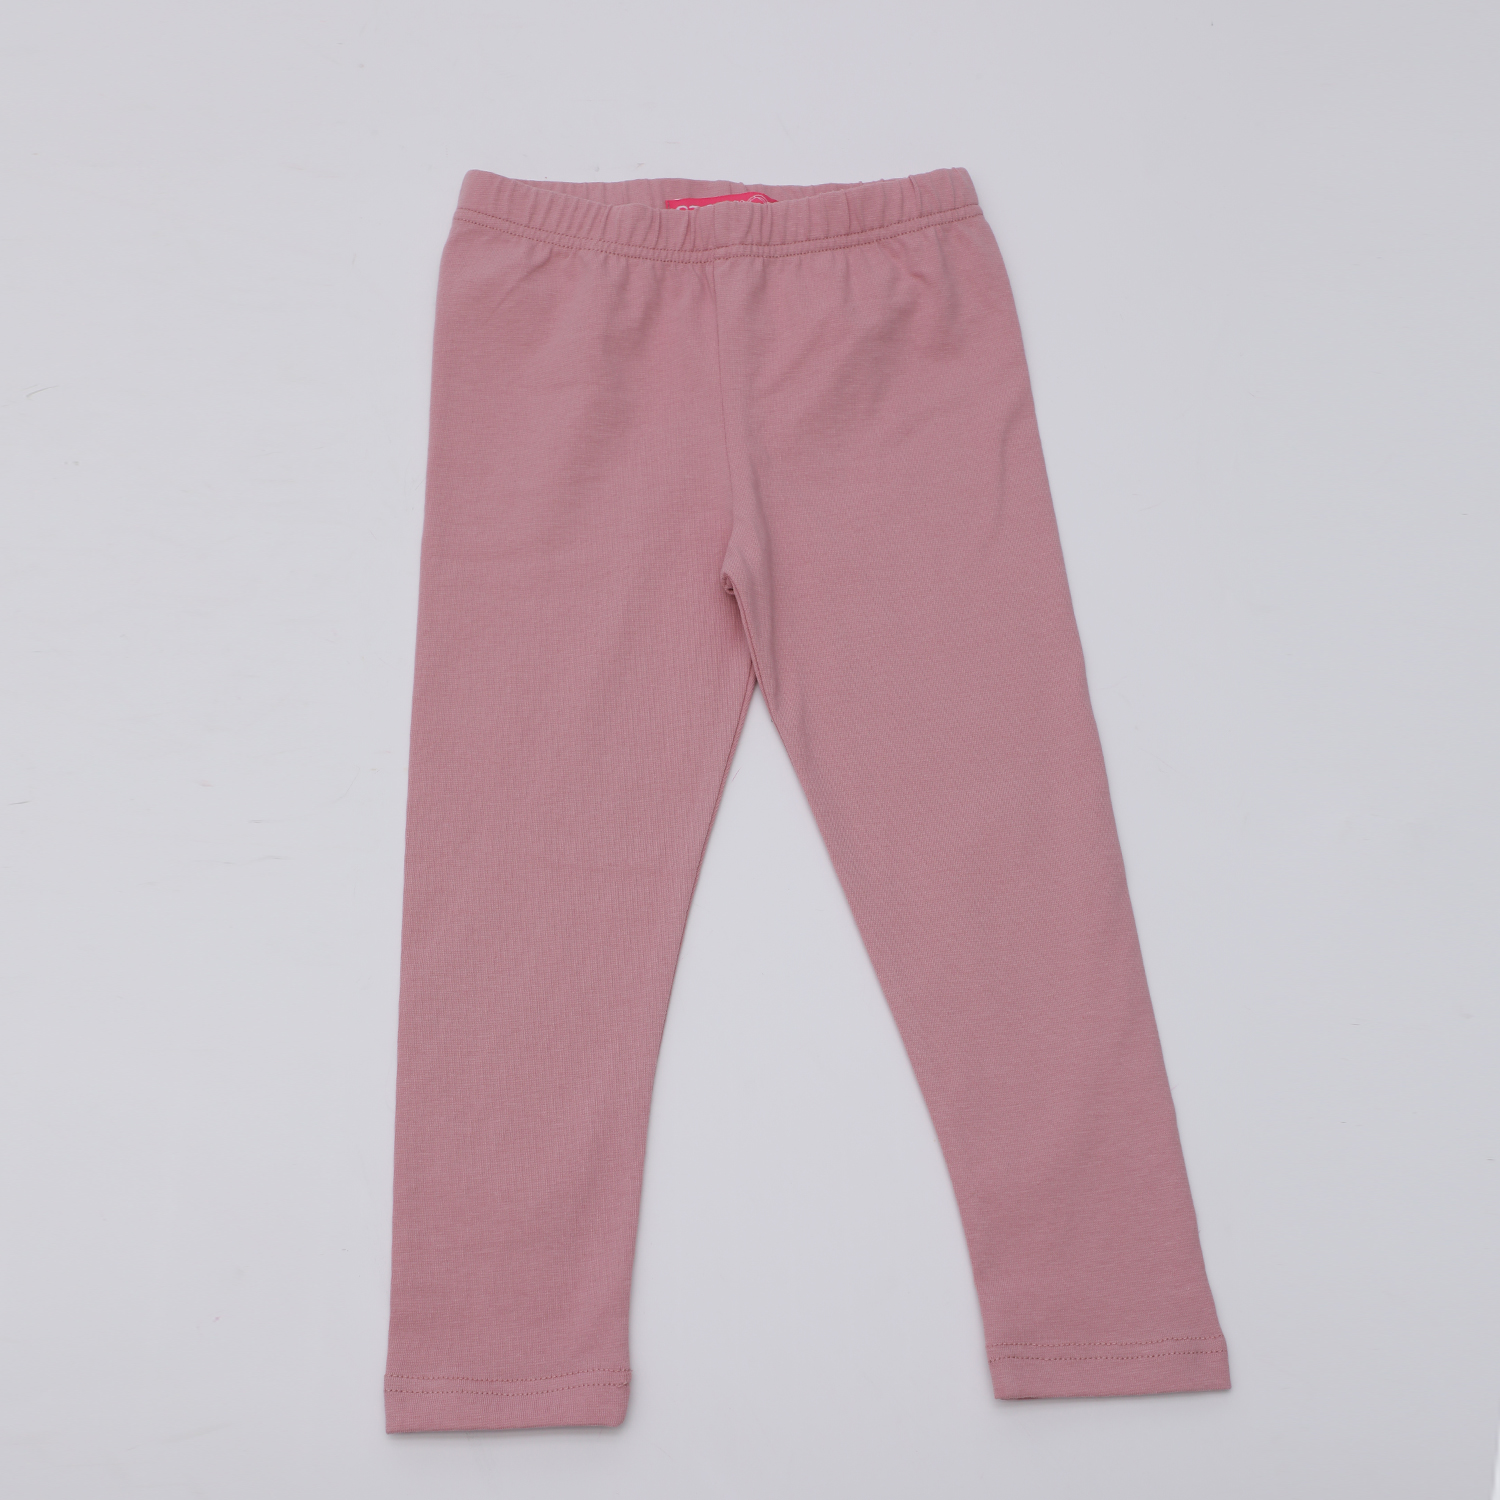 Παιδικά/Girls/Ρούχα/Παντελόνια SAM 0-13 - Παιδικό κολάν SAM 0-13 ροζ